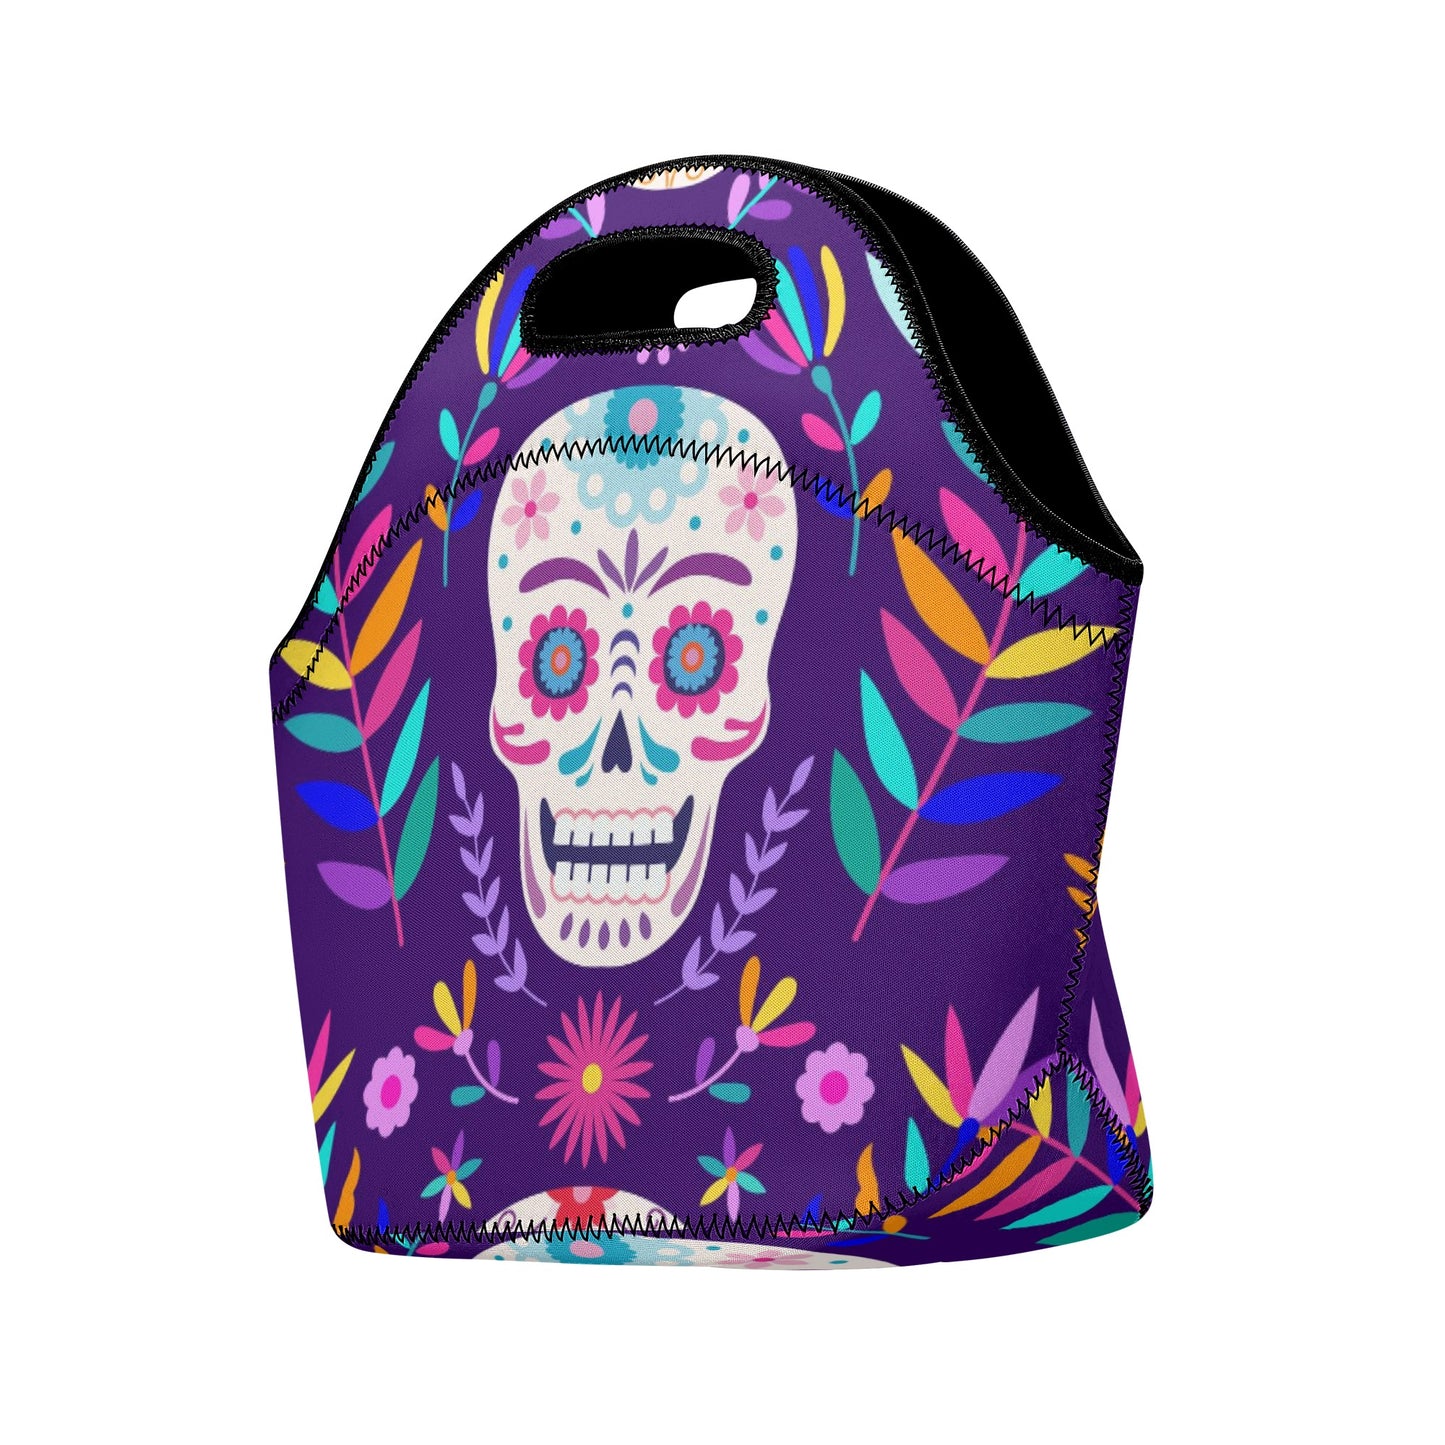 Dia de los muertos gothic skull New Neoprene Lunch Bag